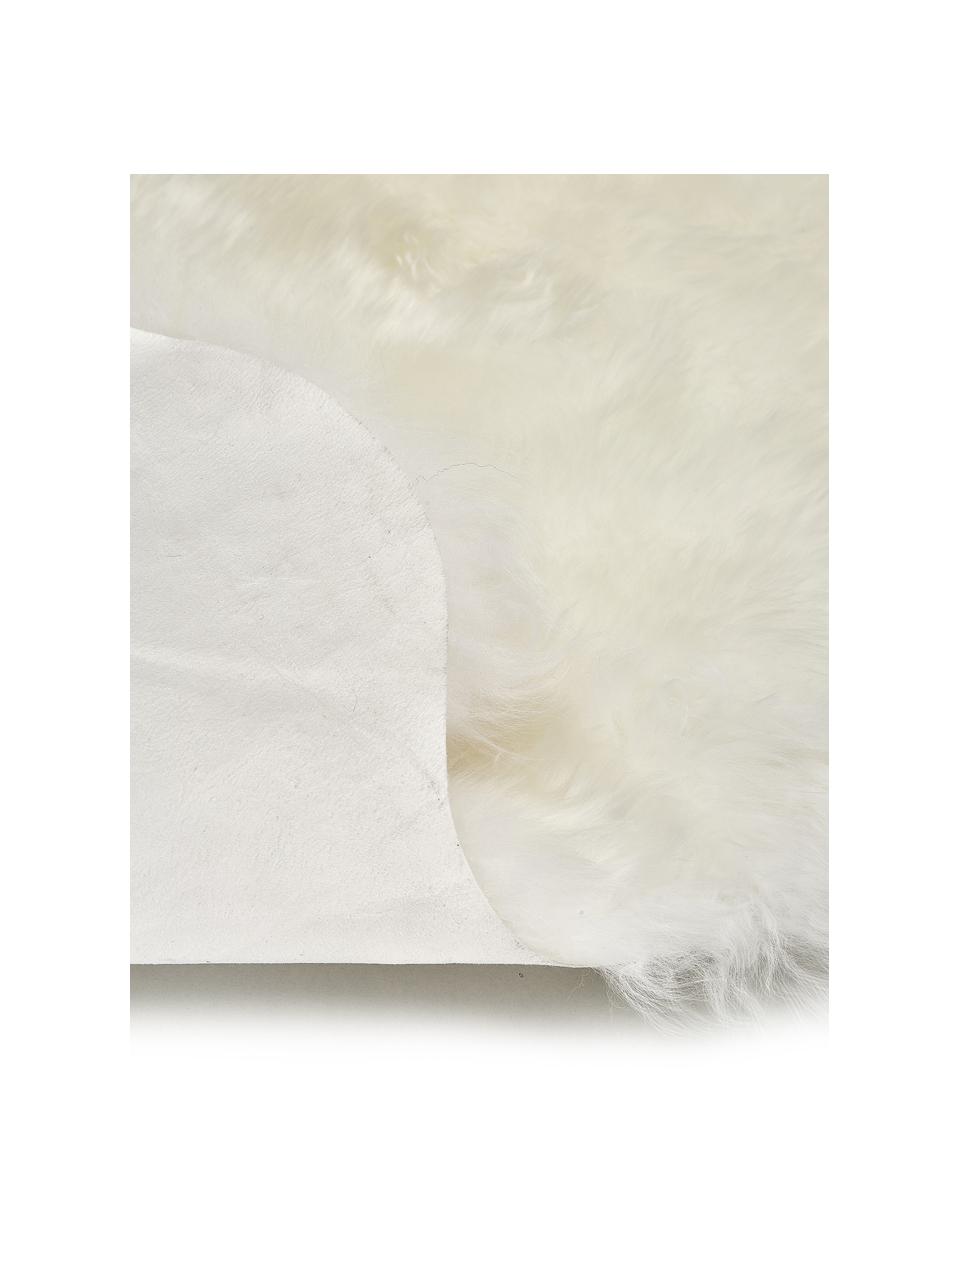 Dywan ze skóry owczej Oslo, proste włosie, Kremowobiały, S 60 x D 180 cm